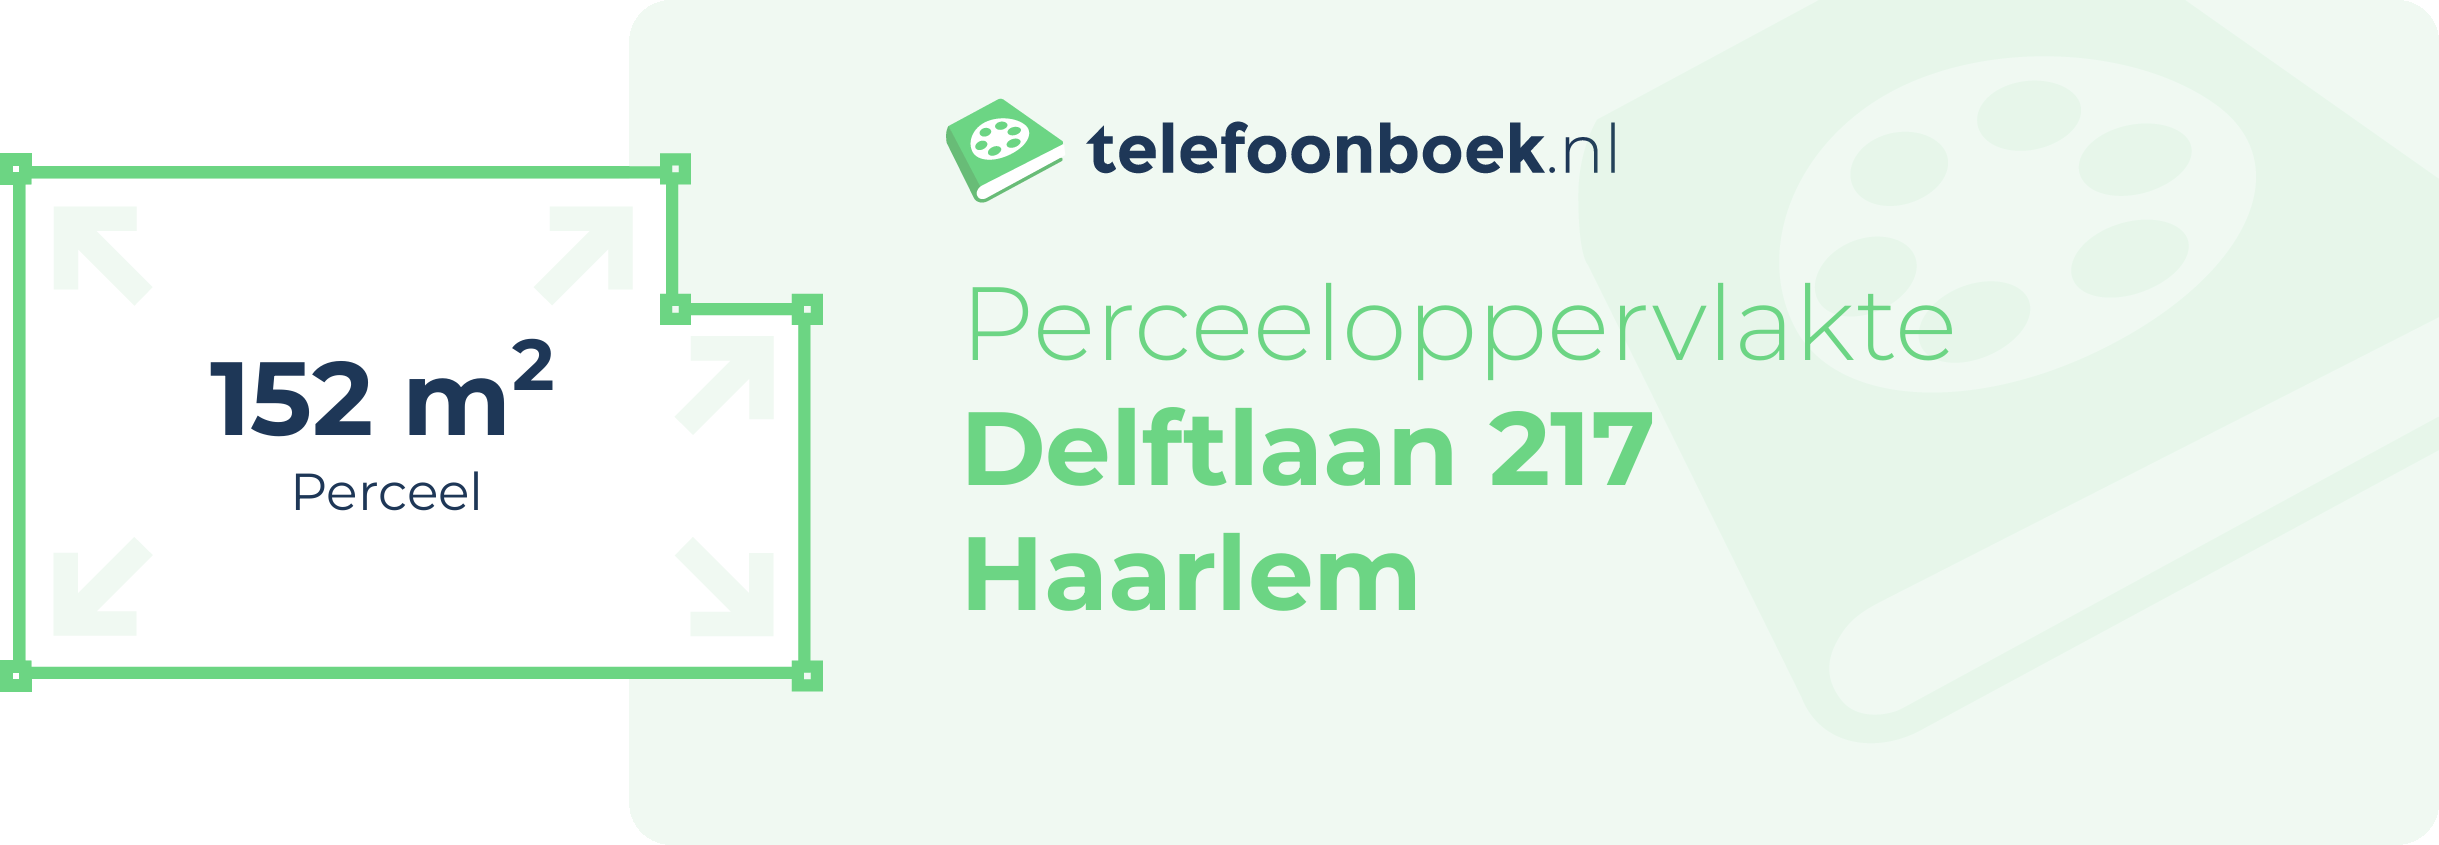 Perceeloppervlakte Delftlaan 217 Haarlem